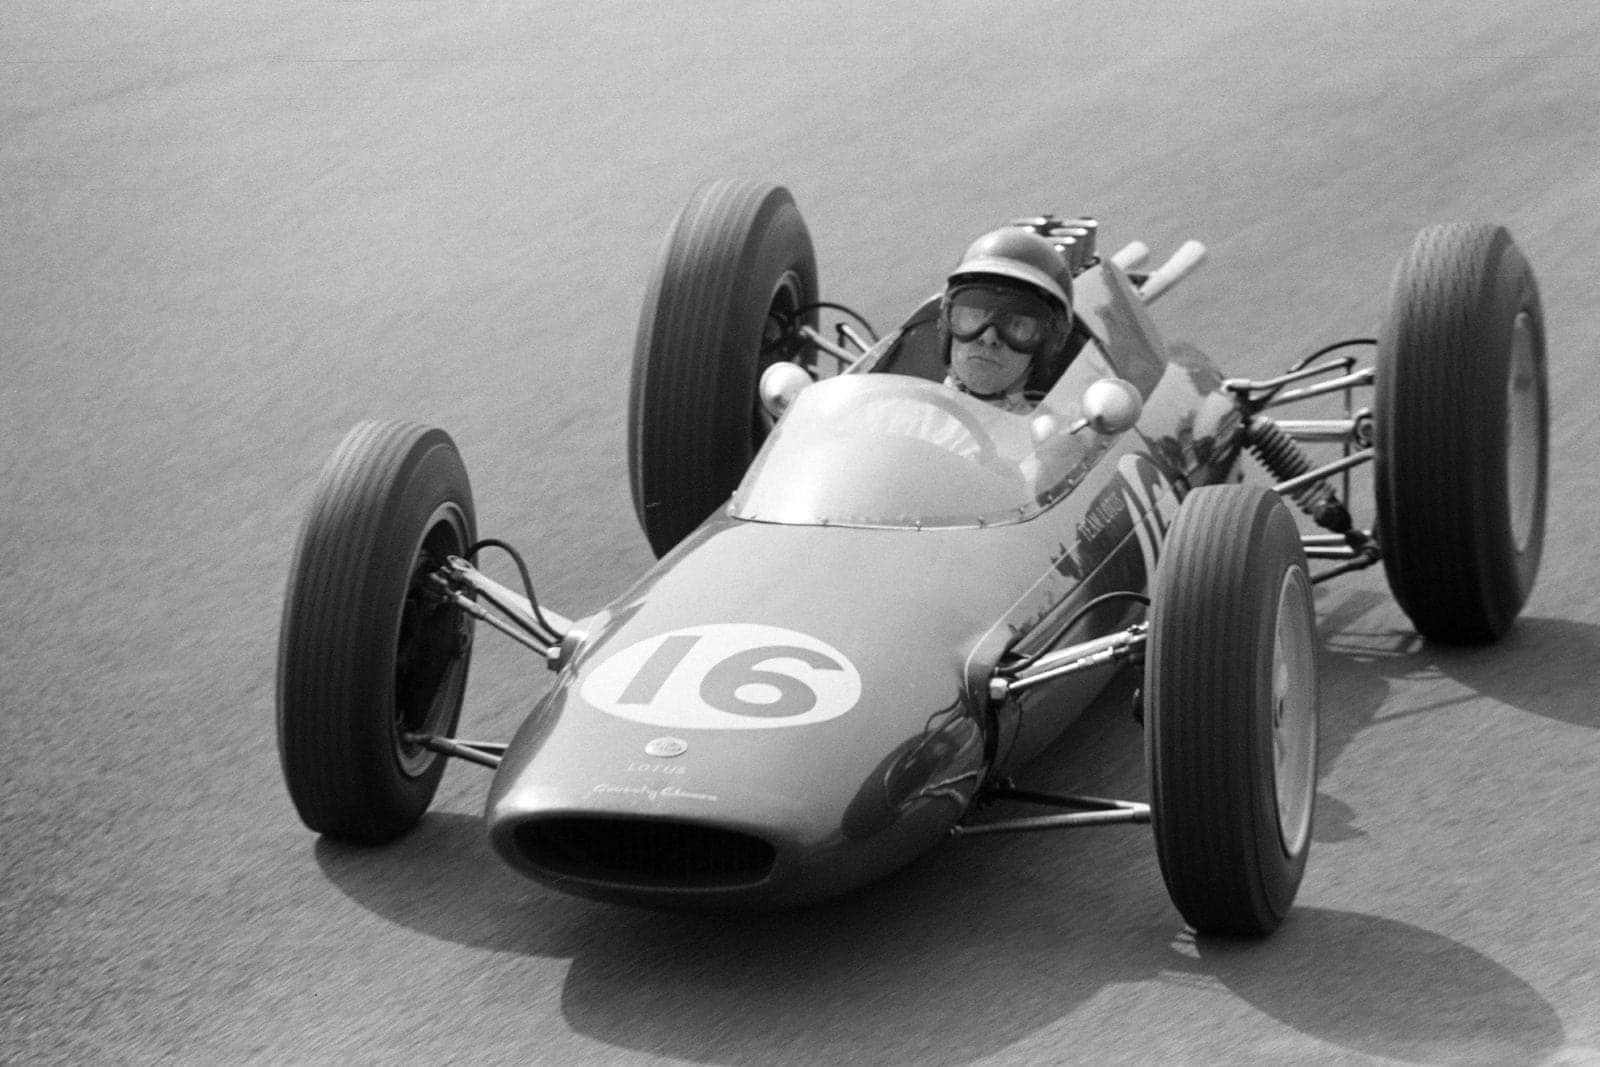 Jim Clark took his debut win in the Lotus 25